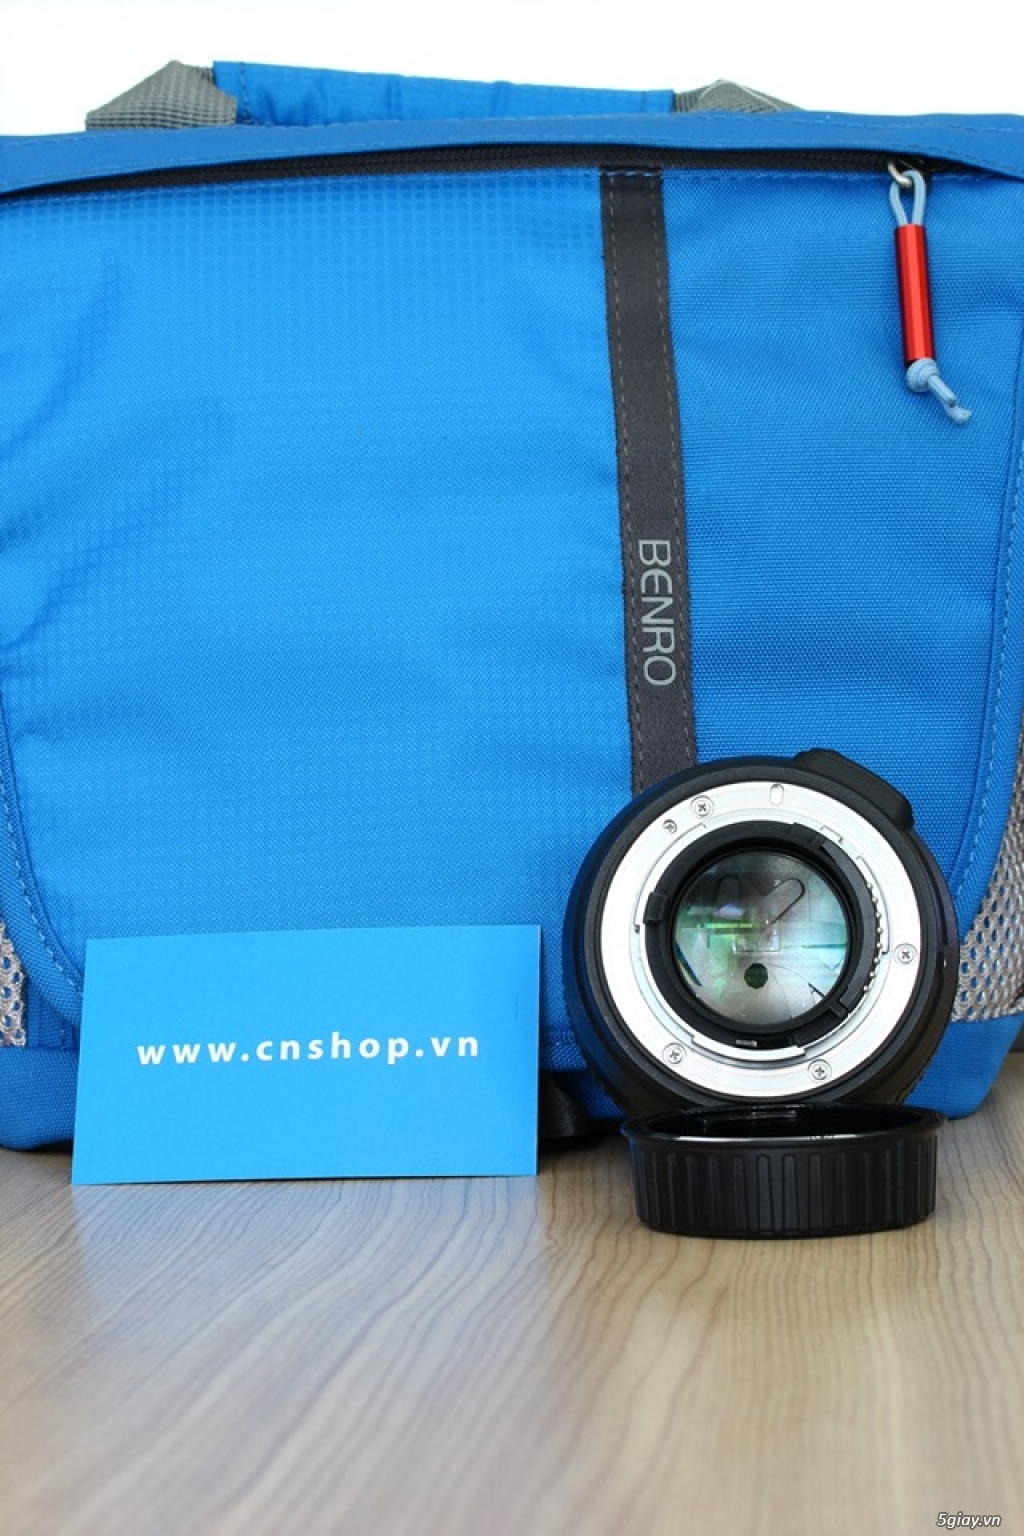 Cần bán Nikon AF-S 50mm f/1.4G tại cnshop.vn